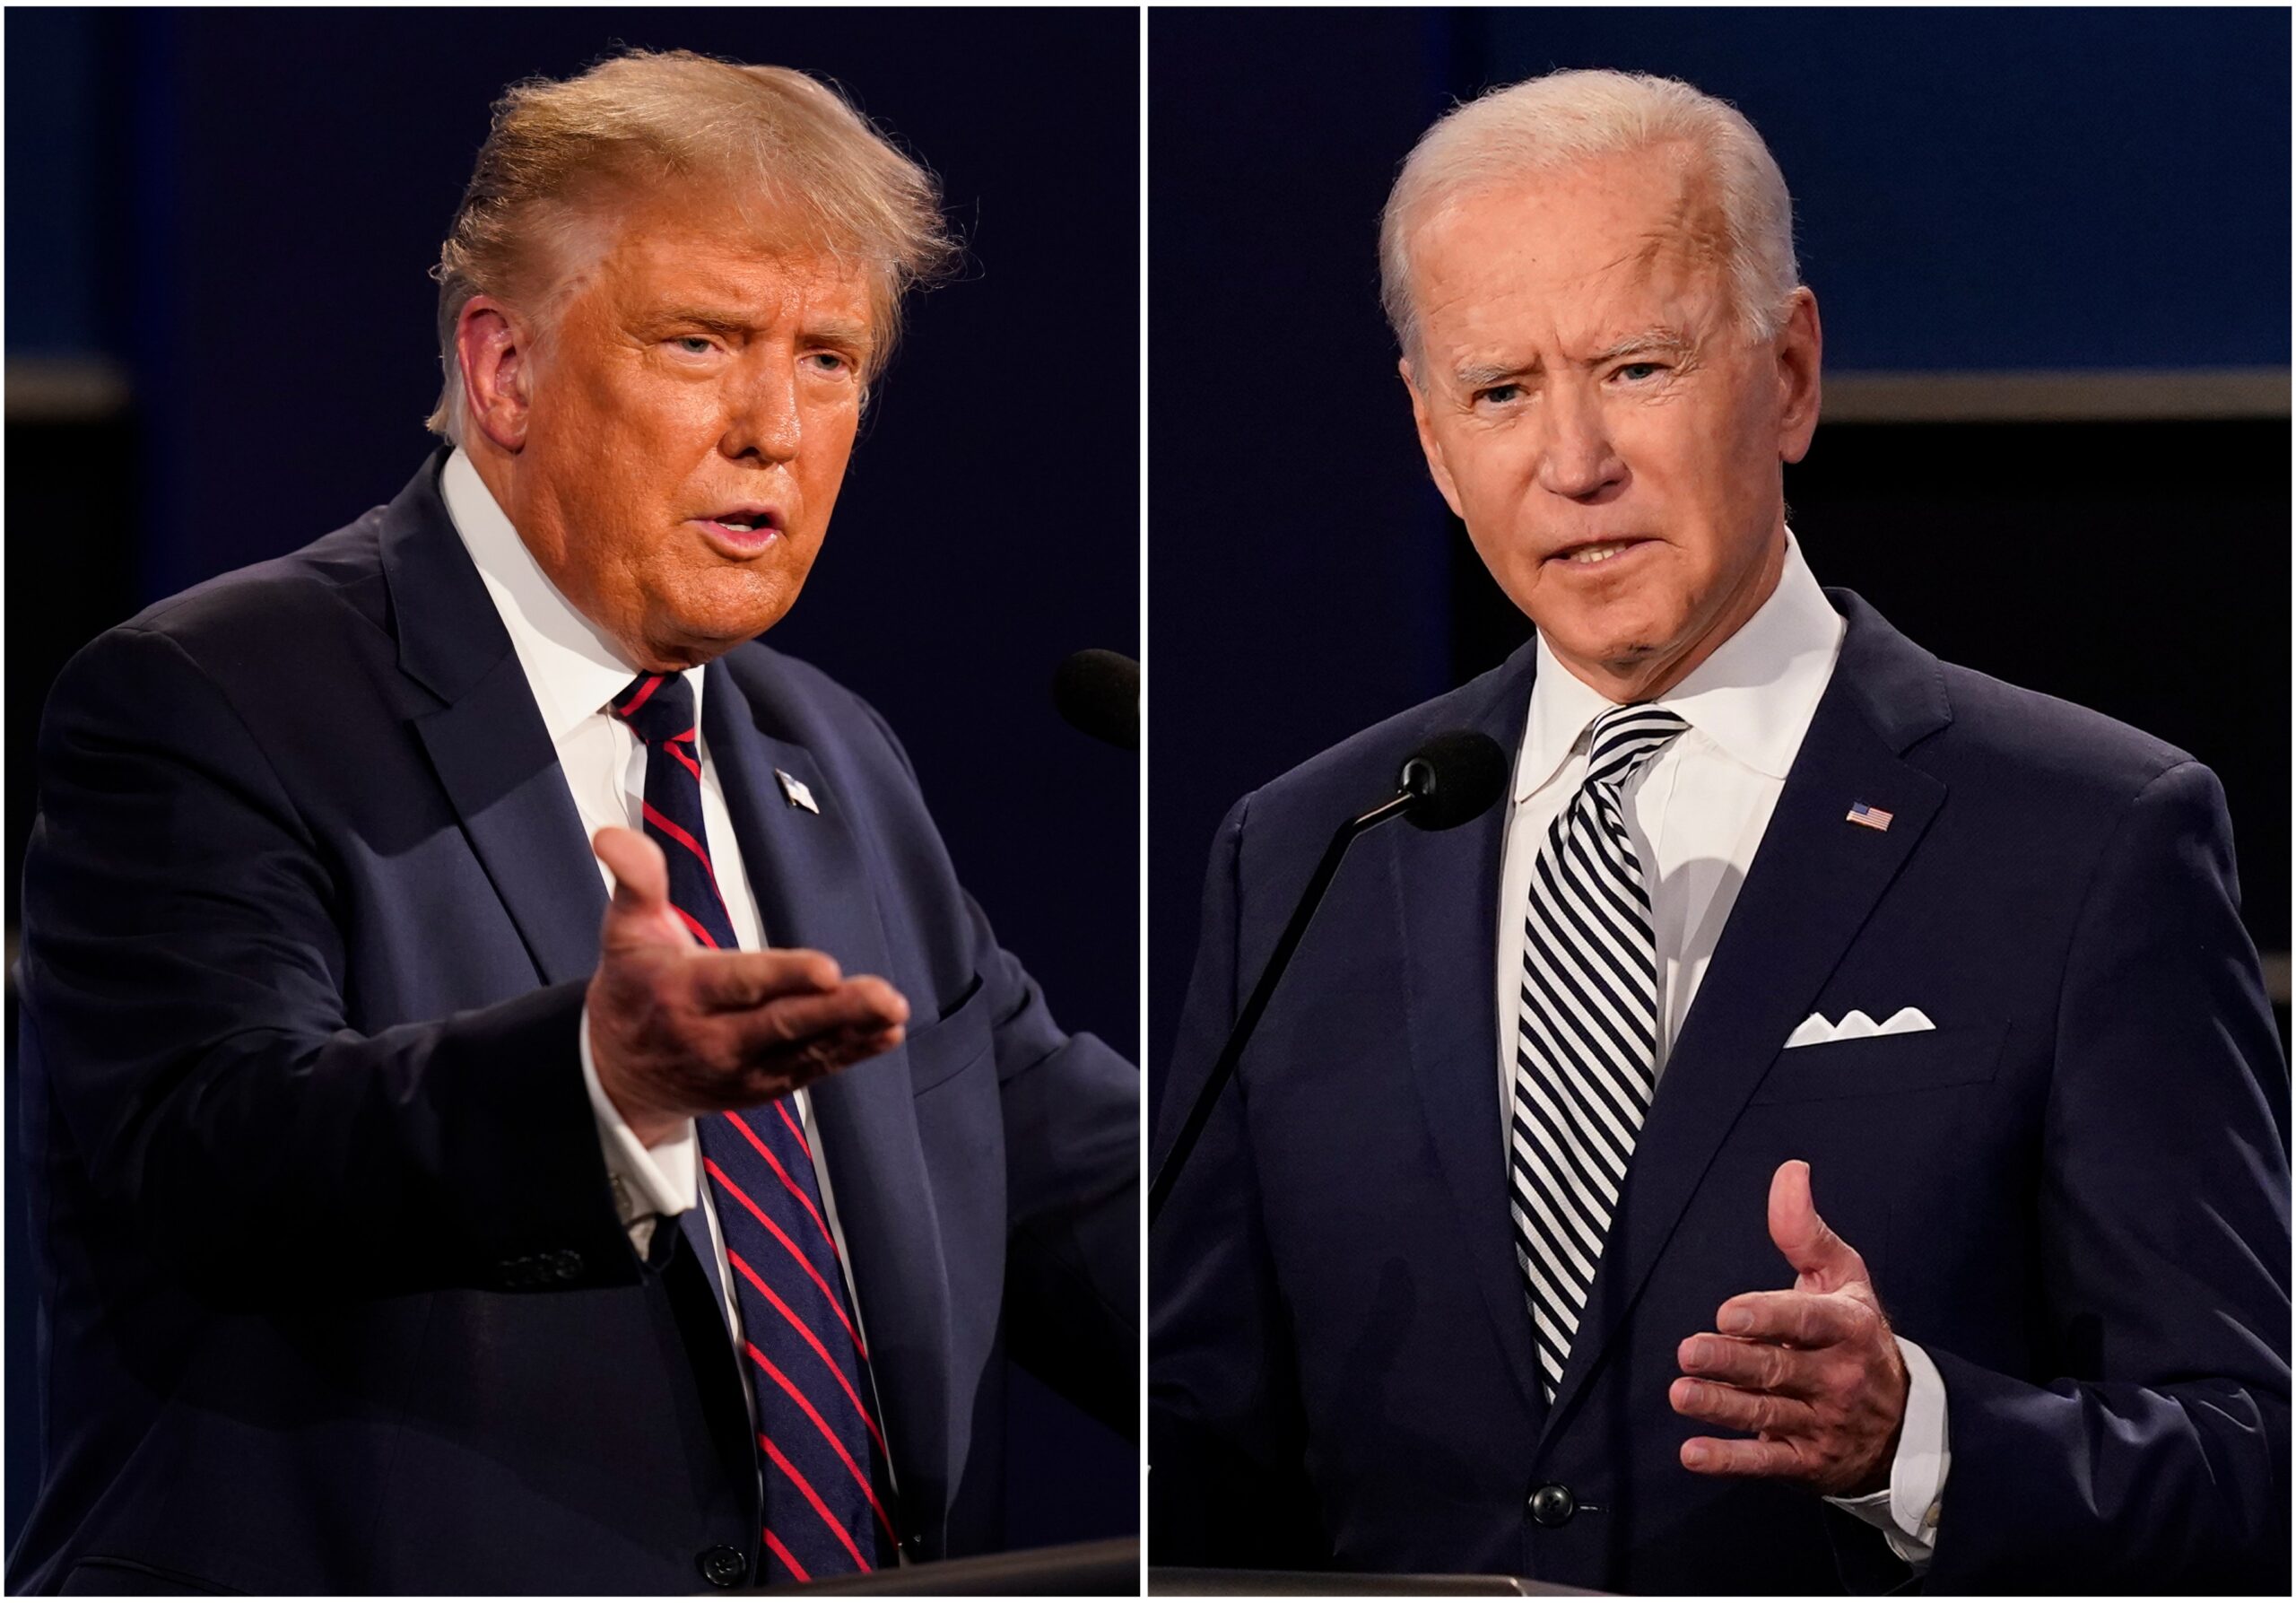 Los votantes están inconformes con Biden y Trump como candidatos, según sondeo – El Diario NY